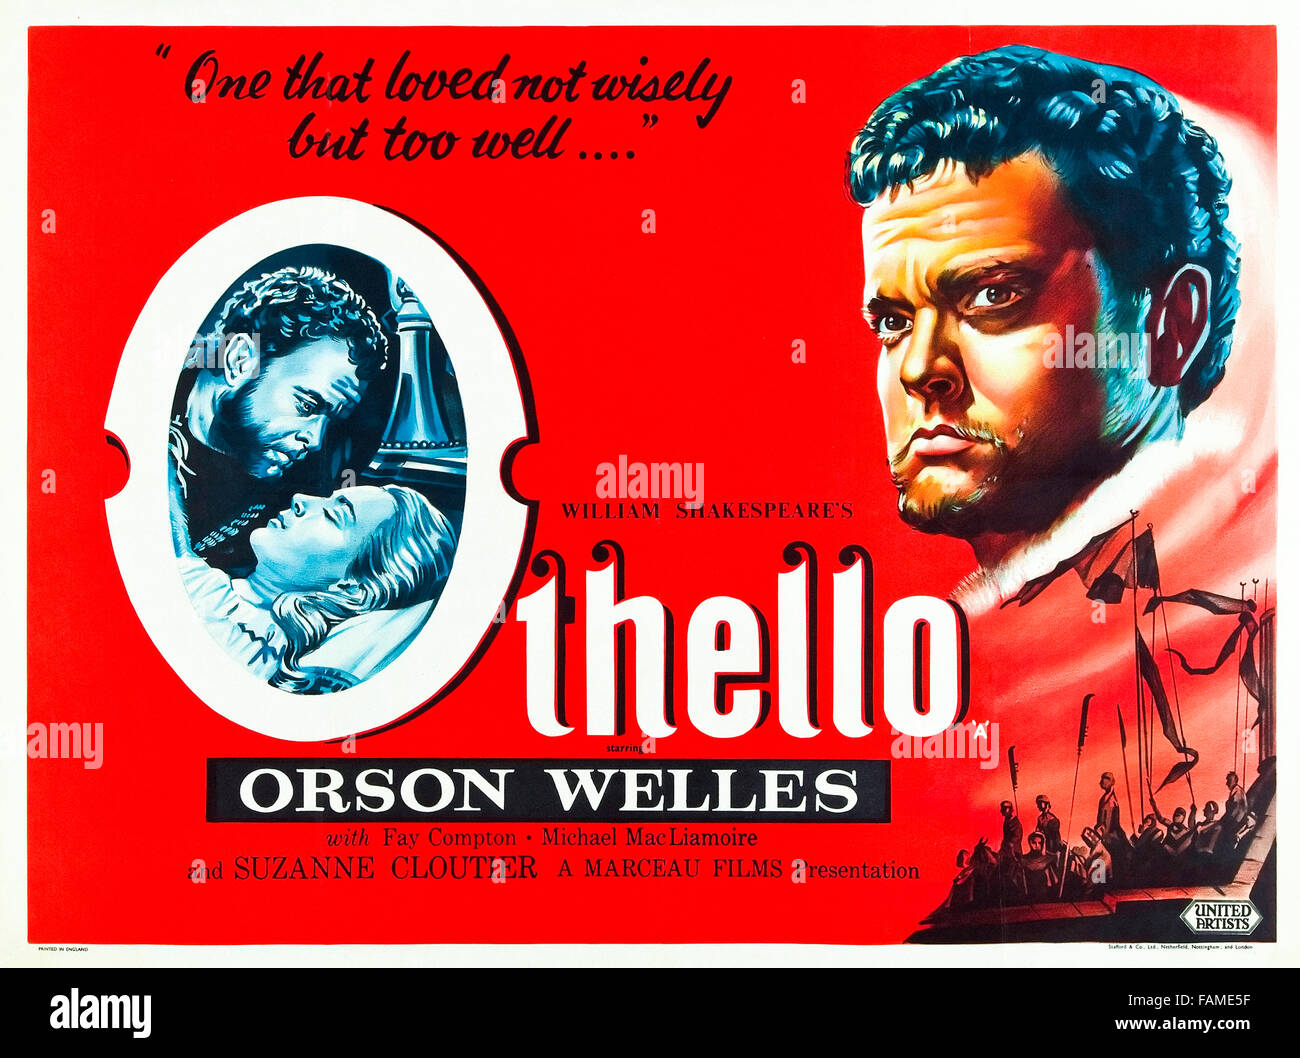 Othello (1951) von Orson Welles Regie und mit Orson Welles, Micheál MacLiammóir, Robert Coote und Fay Compton. Welles überwindet die Schwierigkeiten und einem geringen Budget in seiner Adaption von Shakespeares Othello, die seinen eigenen Star Performance enthält wie der Mohr von Venedig. Stockfoto